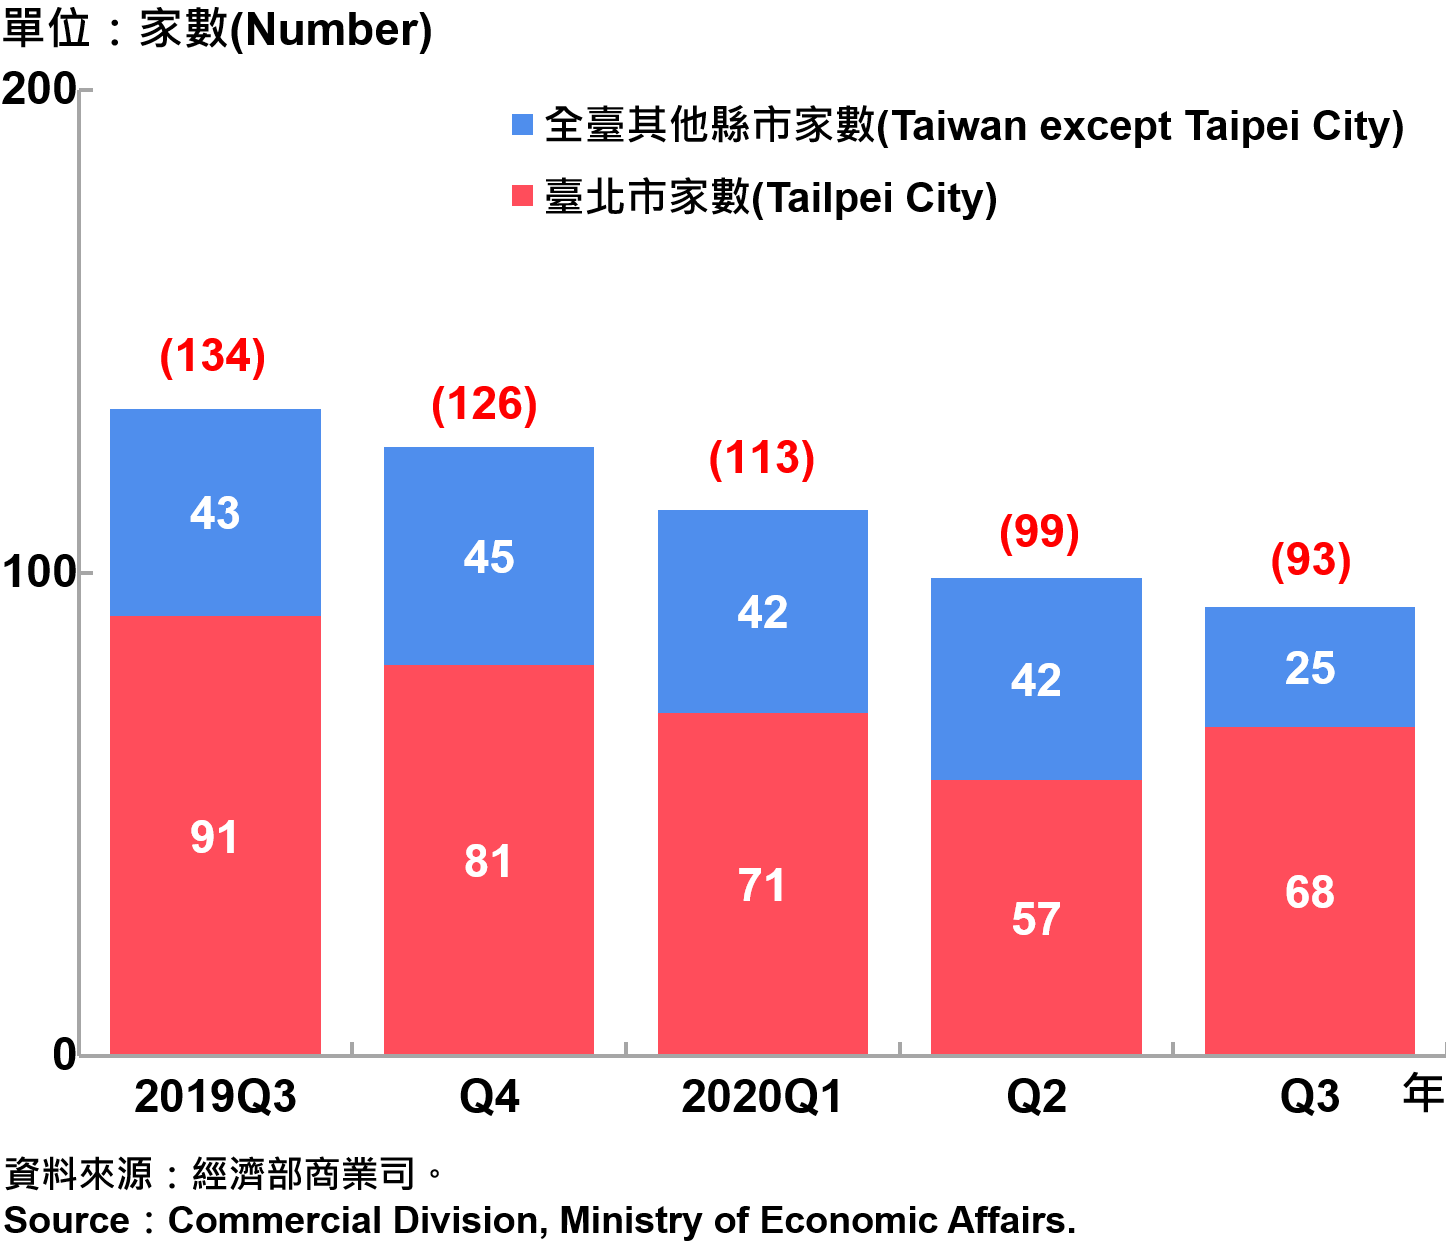 臺北市外商公司新設立家數—2020Q3 Number of Newly Established Foreign Companies in Taipei City—2020Q3